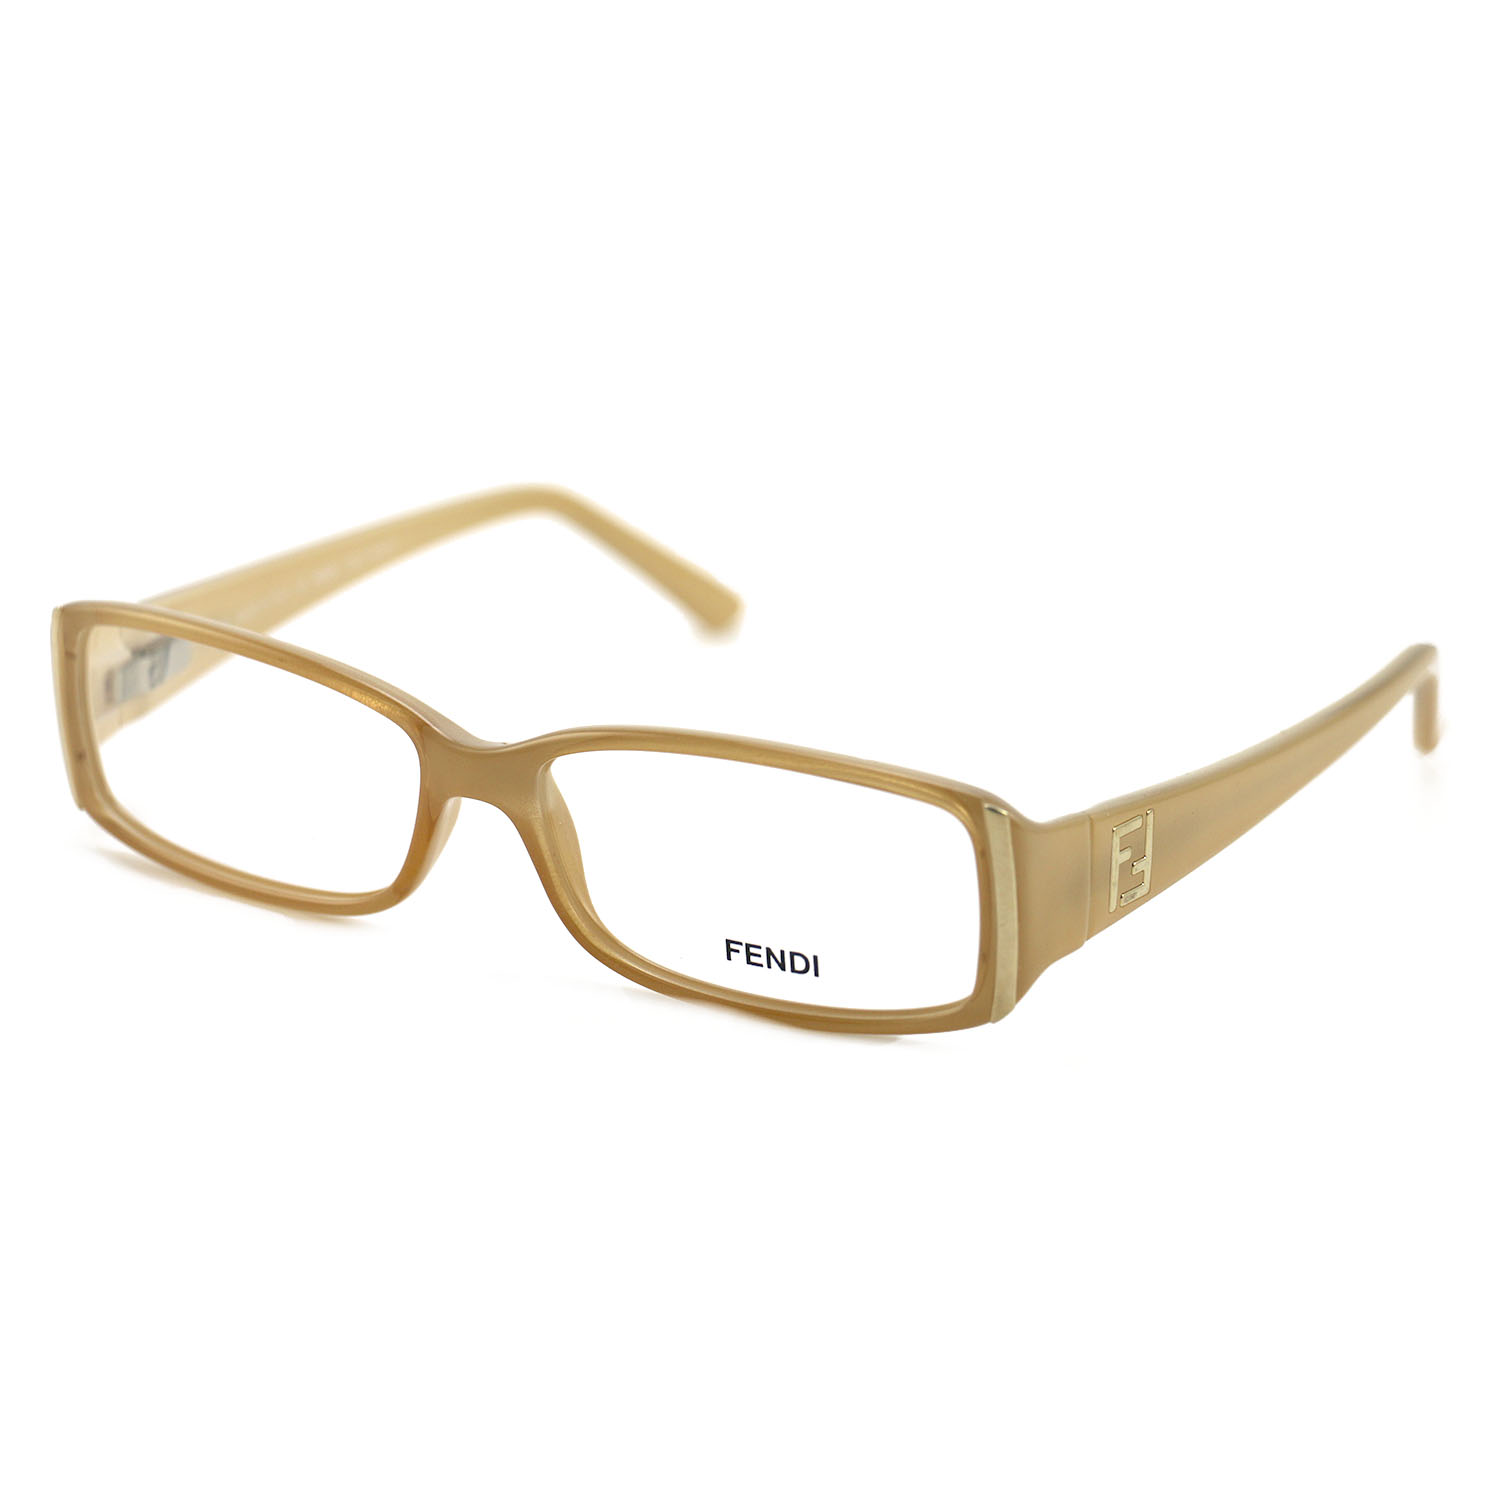 Fendi Womens Eyeglasses F862 260 Beige 53 14 130 Frames Rectangular | eBay